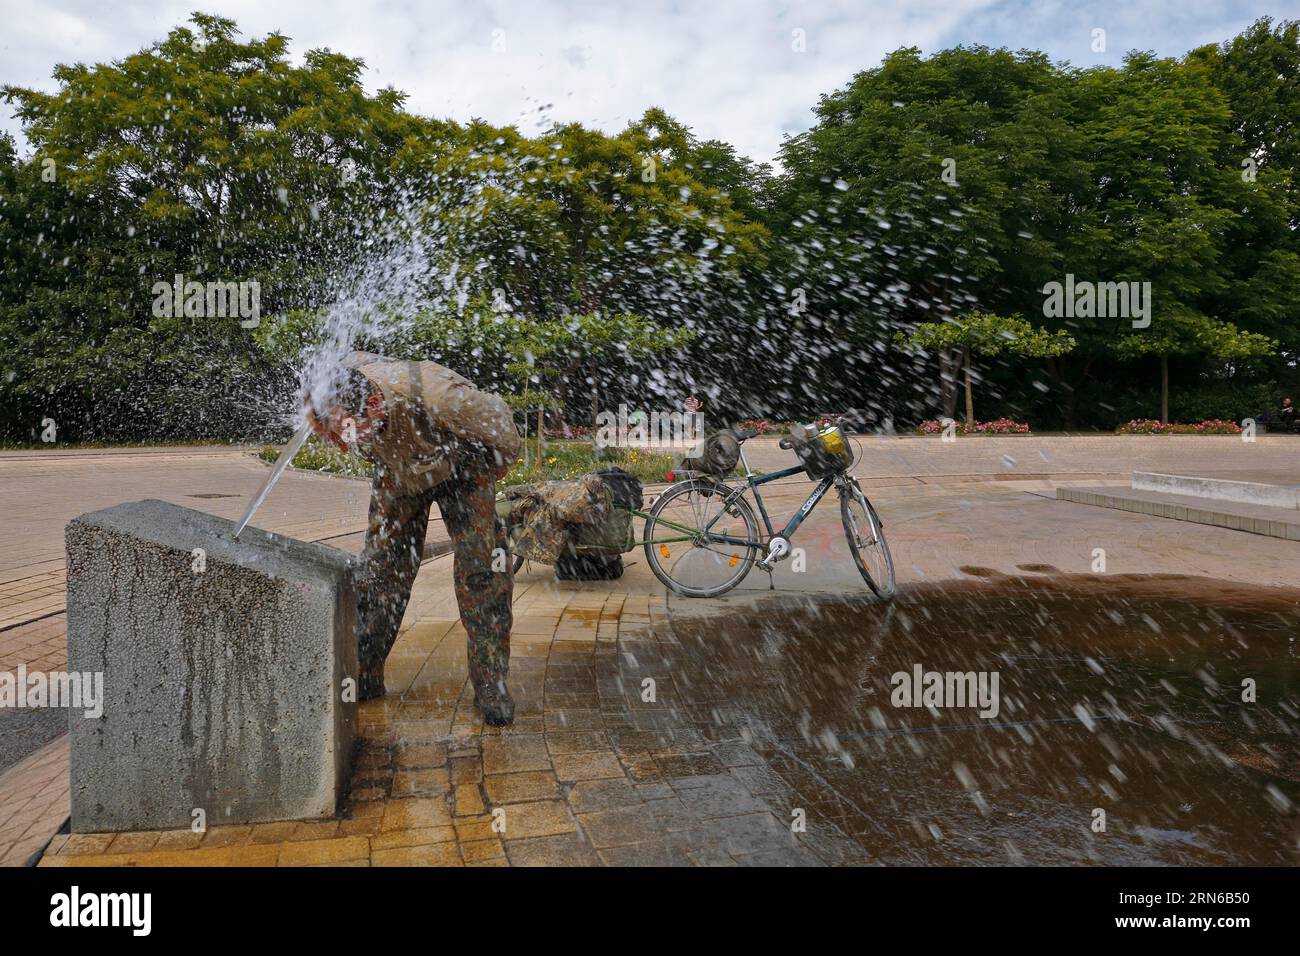 Vélo touriste se rafraîchit à une caractéristique d'eau publique, Magdebourg, Saxe-Anhalt, Allemagne, Europe Banque D'Images